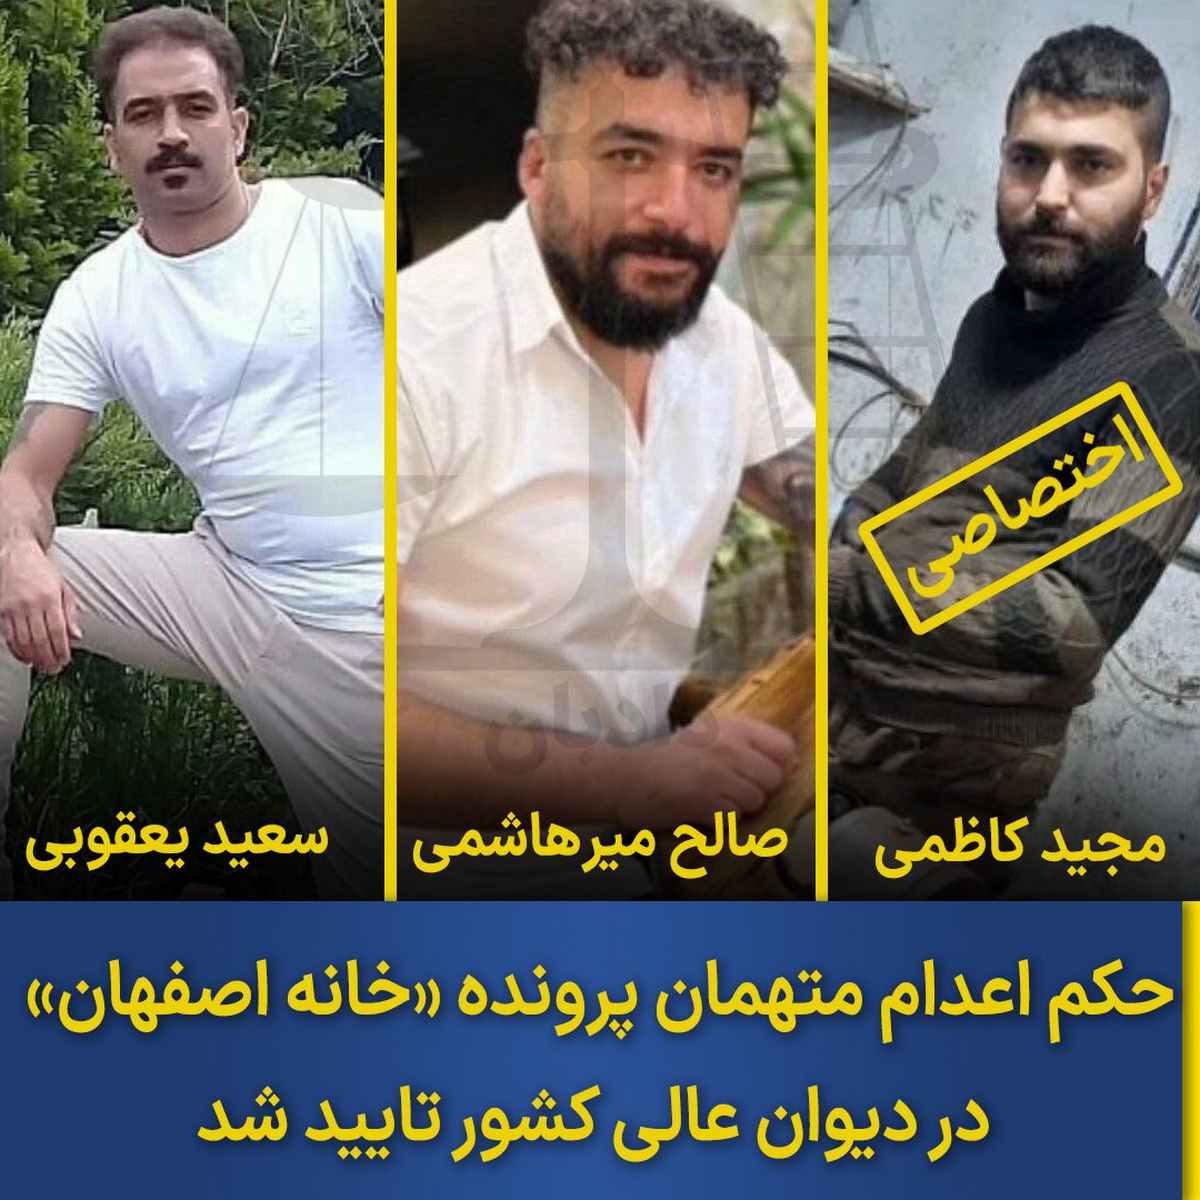 نتیجه دادگاه متهمان خانه اصفهان